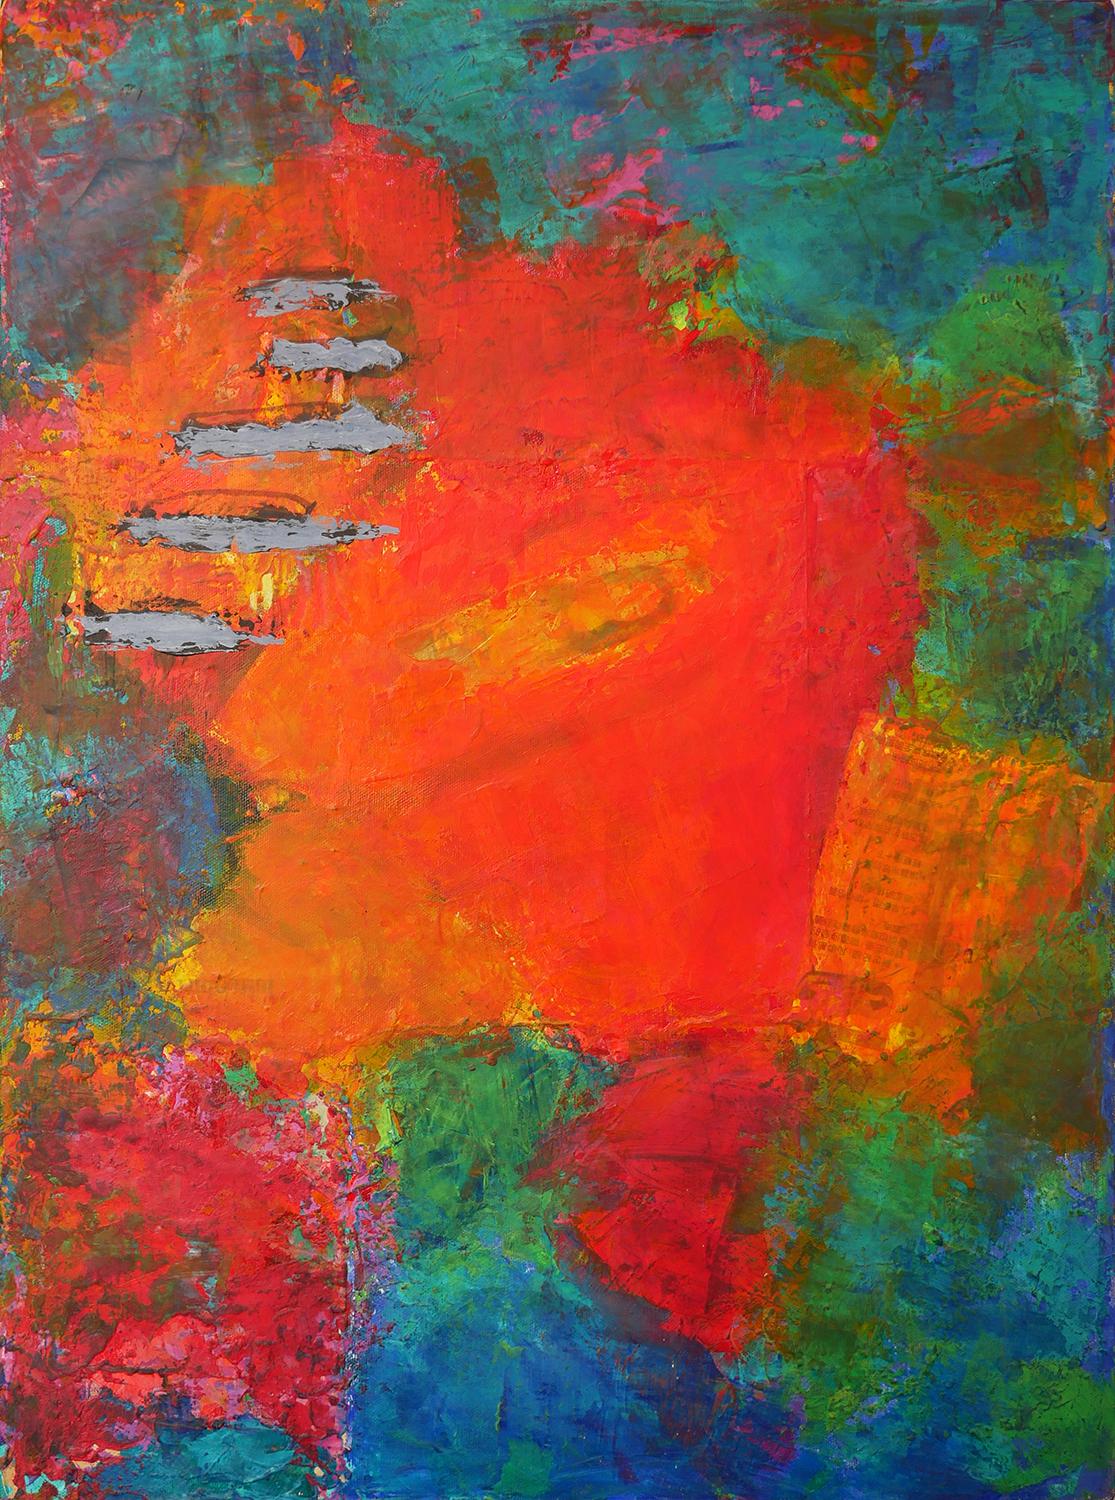 Peinture expressionniste abstraite colorée rouge, bleue et verte de l'artiste Phyllis Flax, basée à Houston, Texas. L'œuvre présente de grandes zones de couleur qui se fondent les unes dans les autres, avec des coupures de presse et des